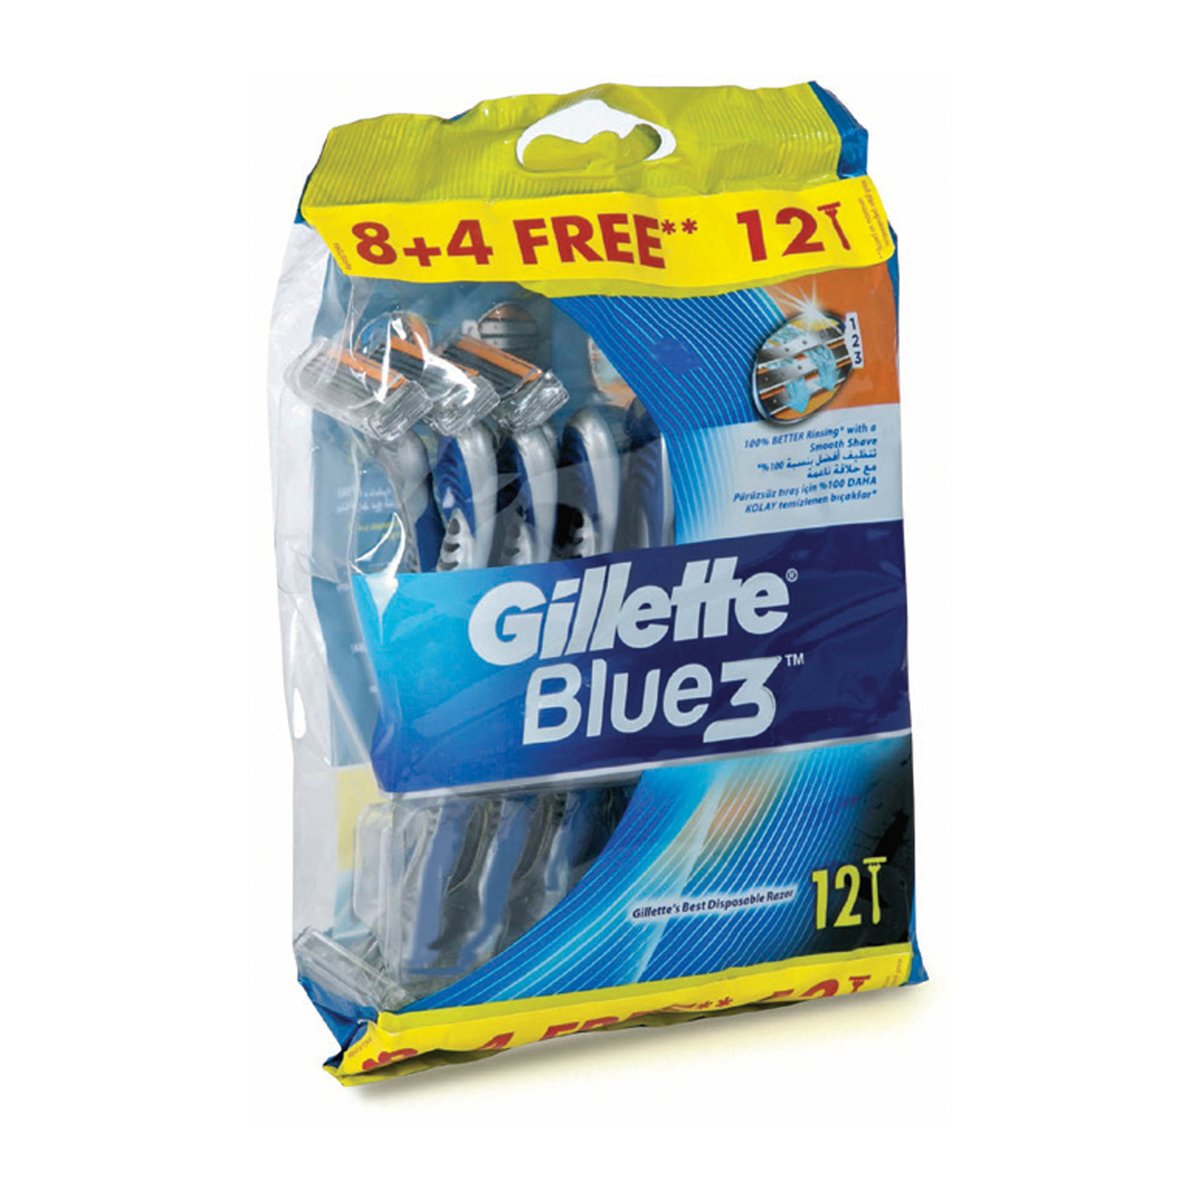 Gillette Blue3 Disposable Razor 8pcs + 4